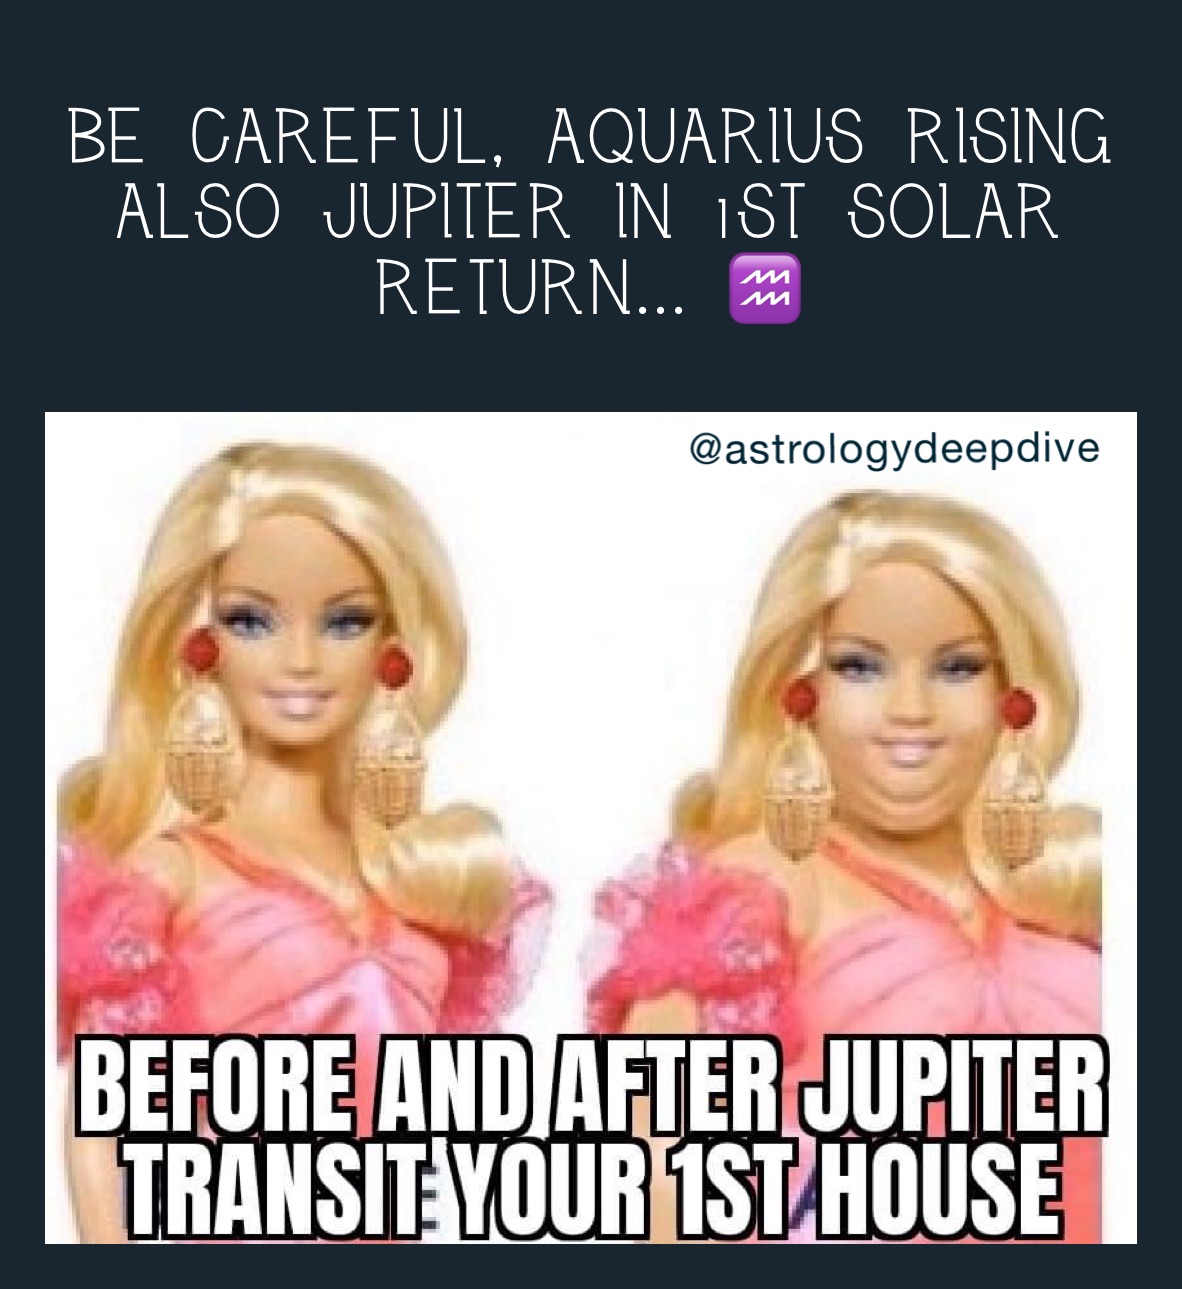 Be careful, aquarius rising
Also jupiter in 1st solar return... ♒️